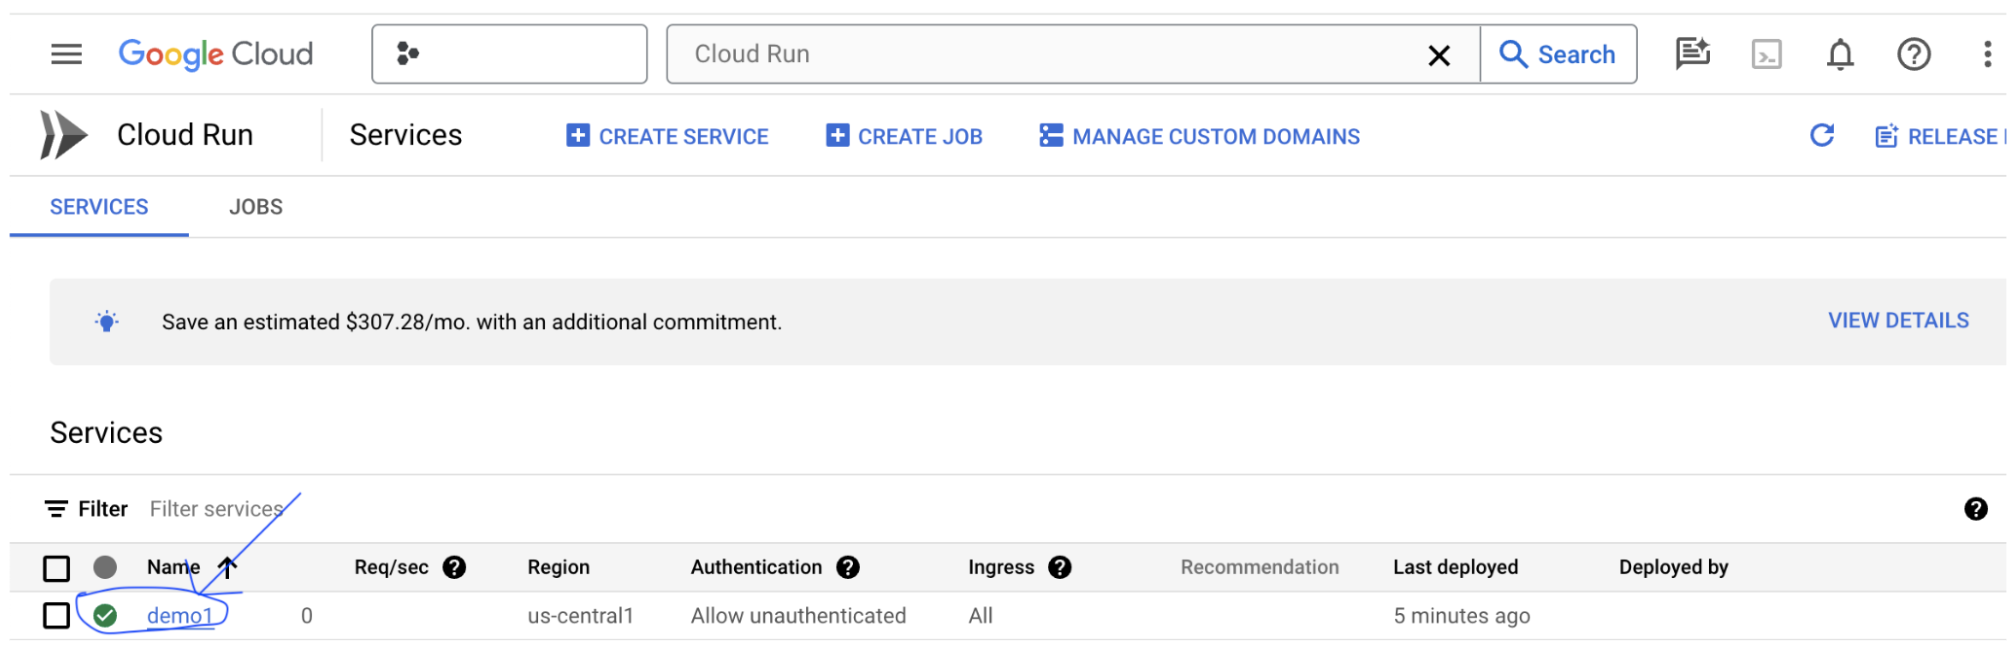 Google Cloud 控制台 Cloud Run 列表